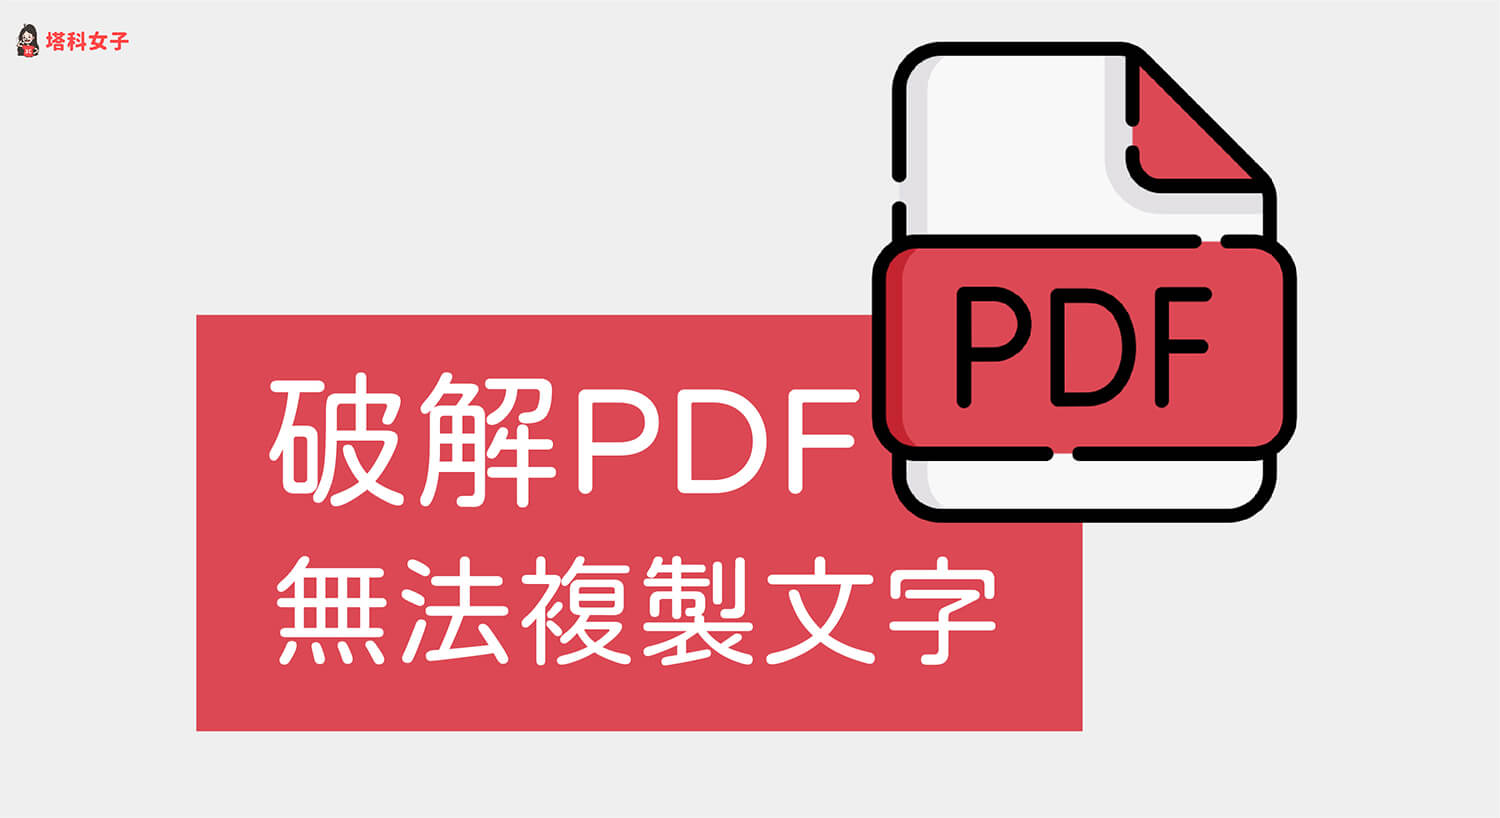 PDF 無法複製文字？教你這招快速破解 PDF 禁止複製